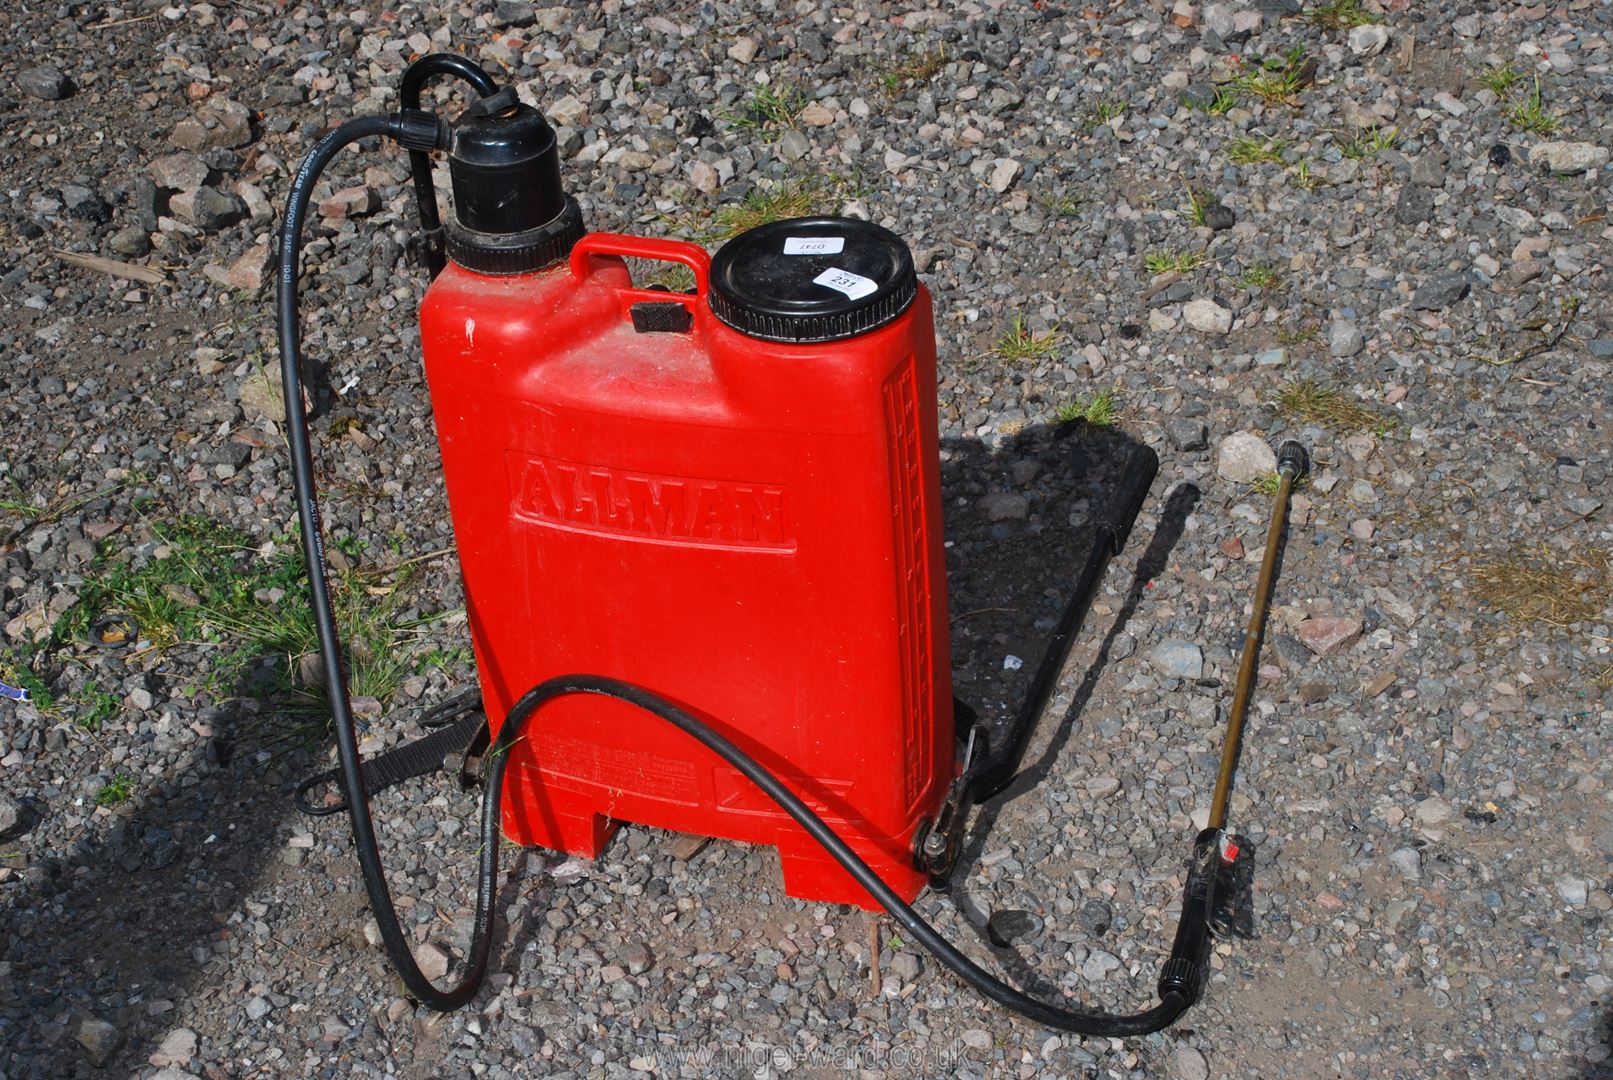 An Allman X15 back pack sprayer.